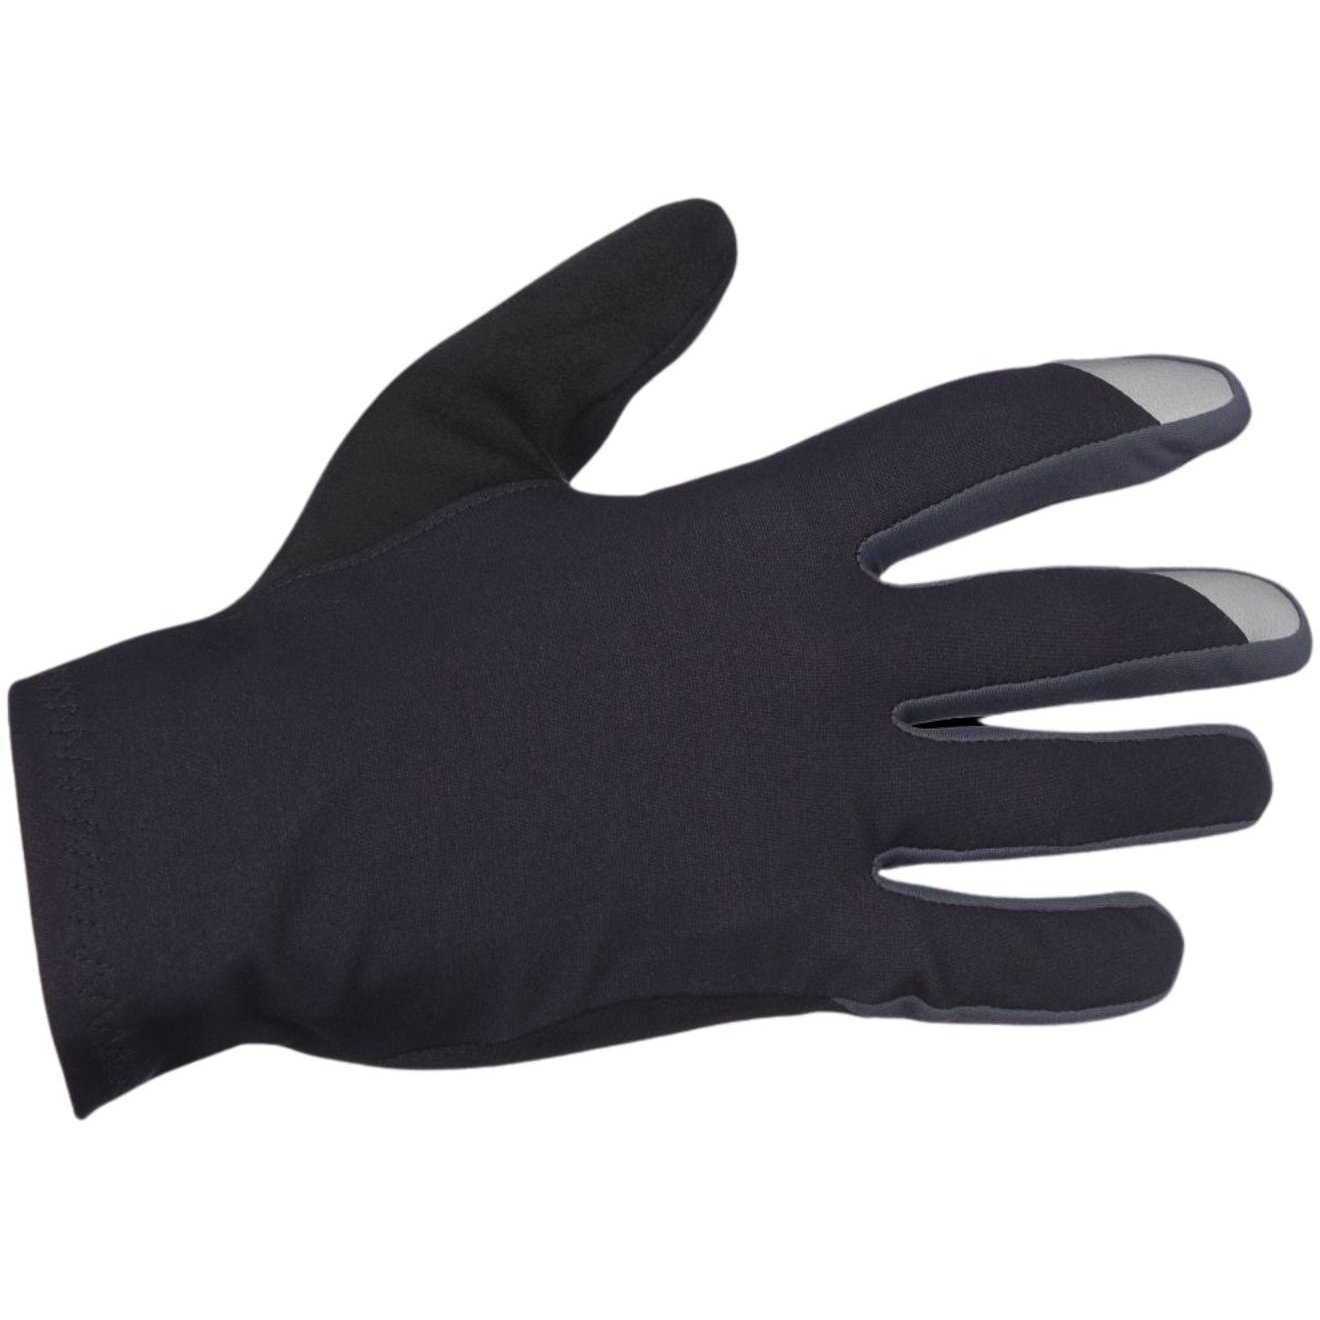 Produktbild von Q36.5 Hybrid Que X Vollfinger Handschuhe - schwarz